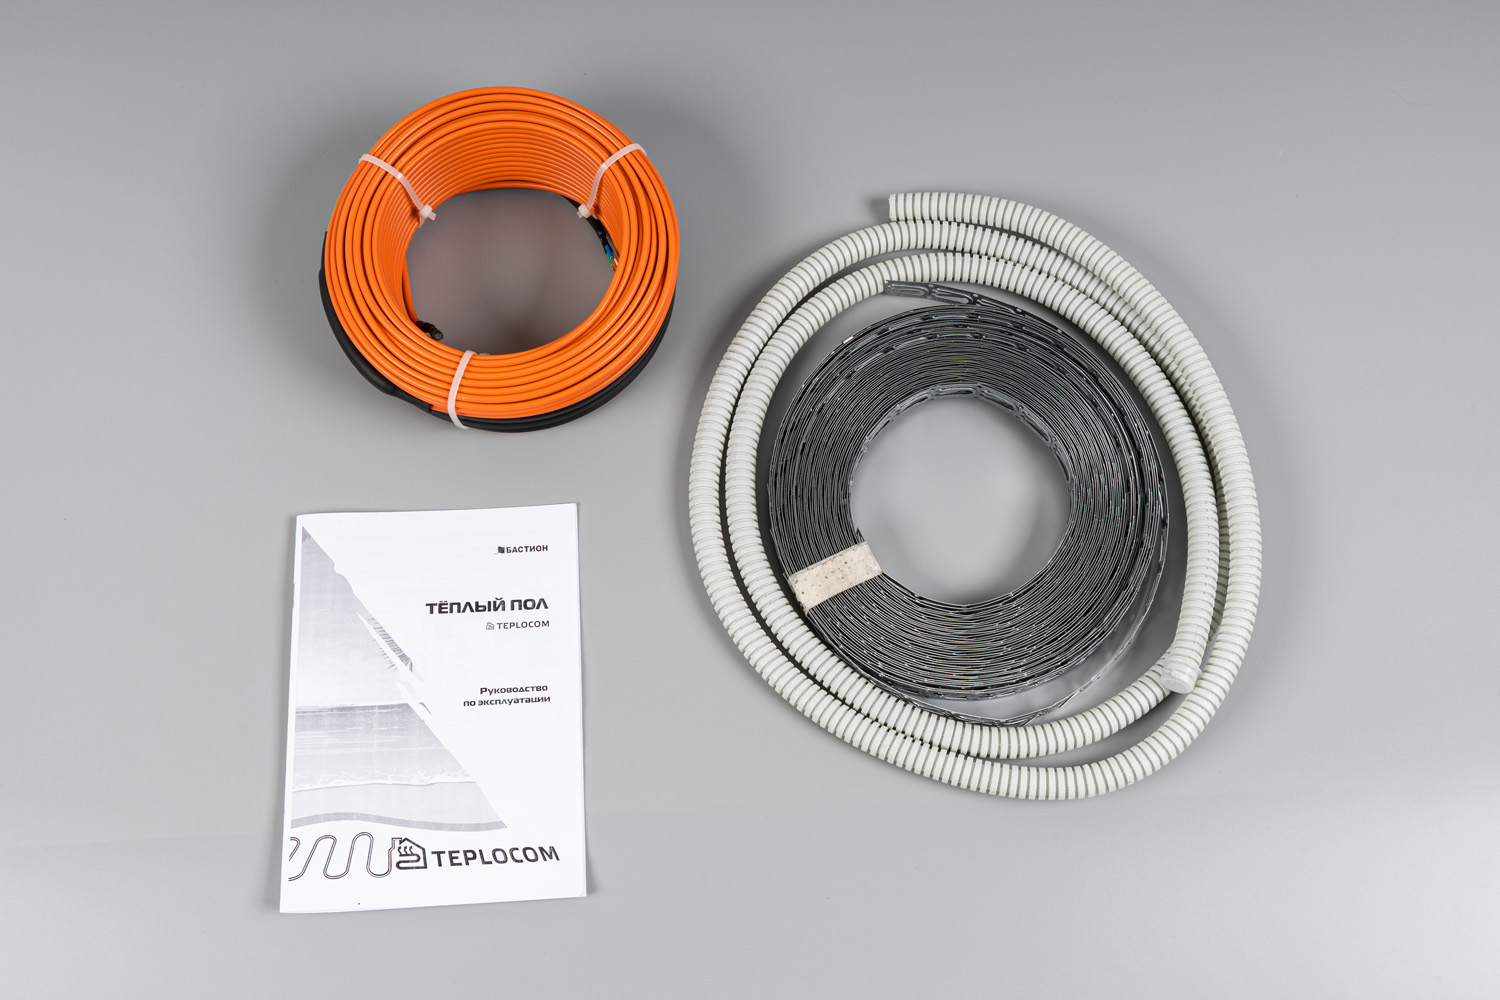 Теплый пол греющий кабель двужильный 41 м, 800 Вт, без термостата, Бастион Teplocom НК-41 (НК-41)